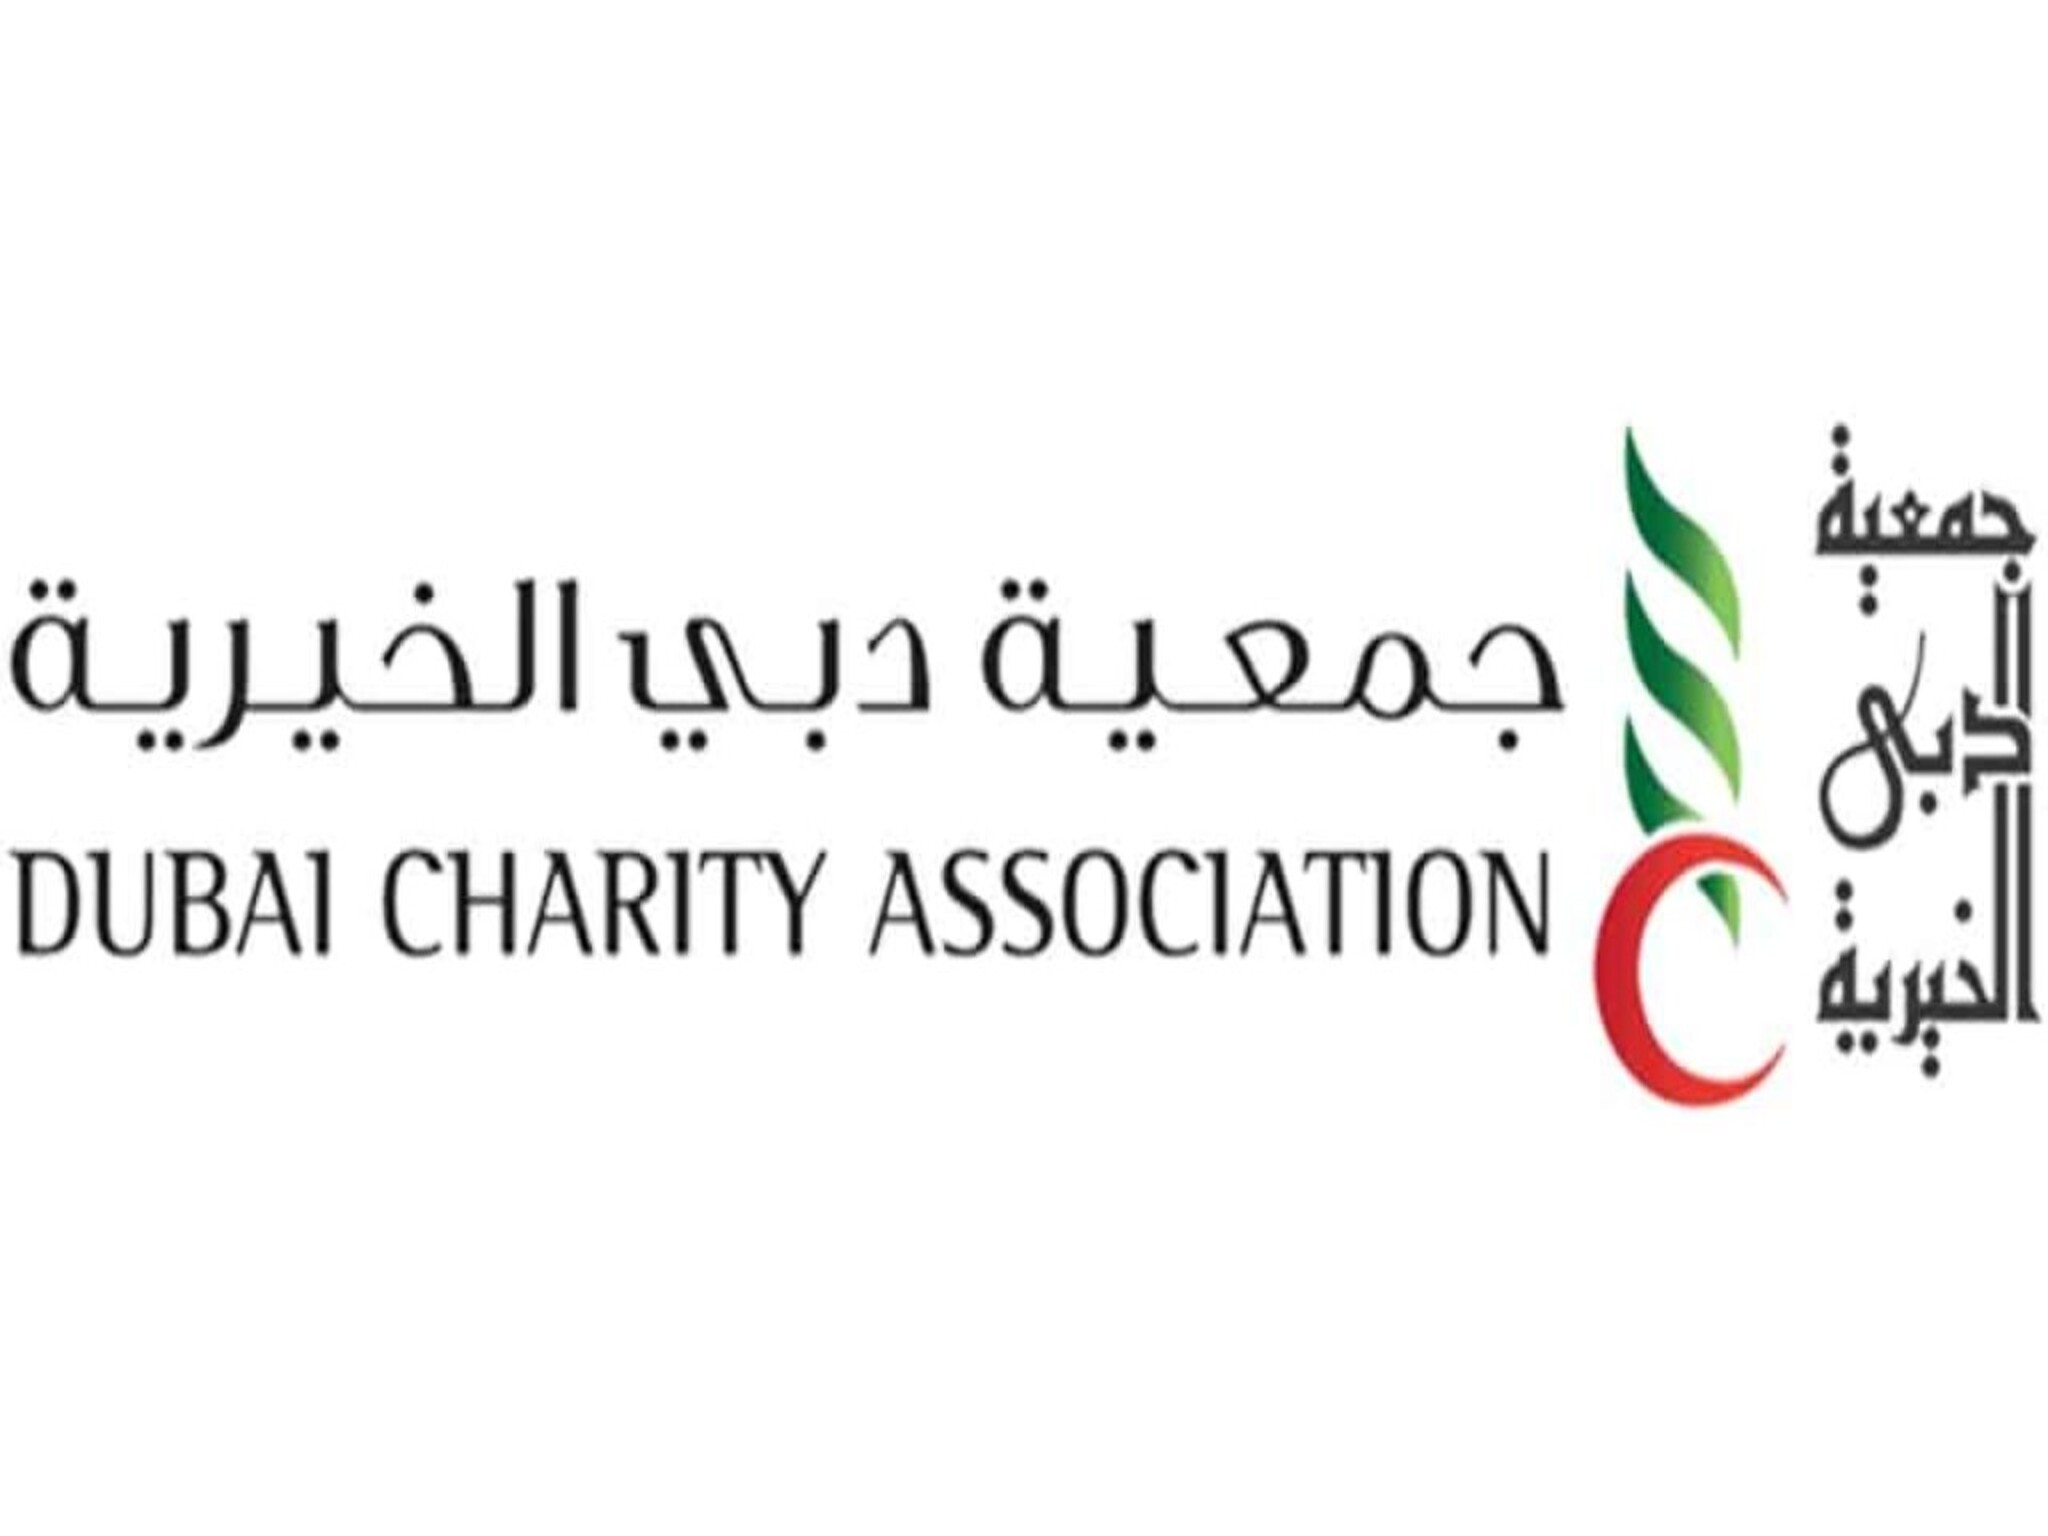 الآن...شروط الحصول علي مساعدات مالية من جمعية دبي الخيرية 1445هـ